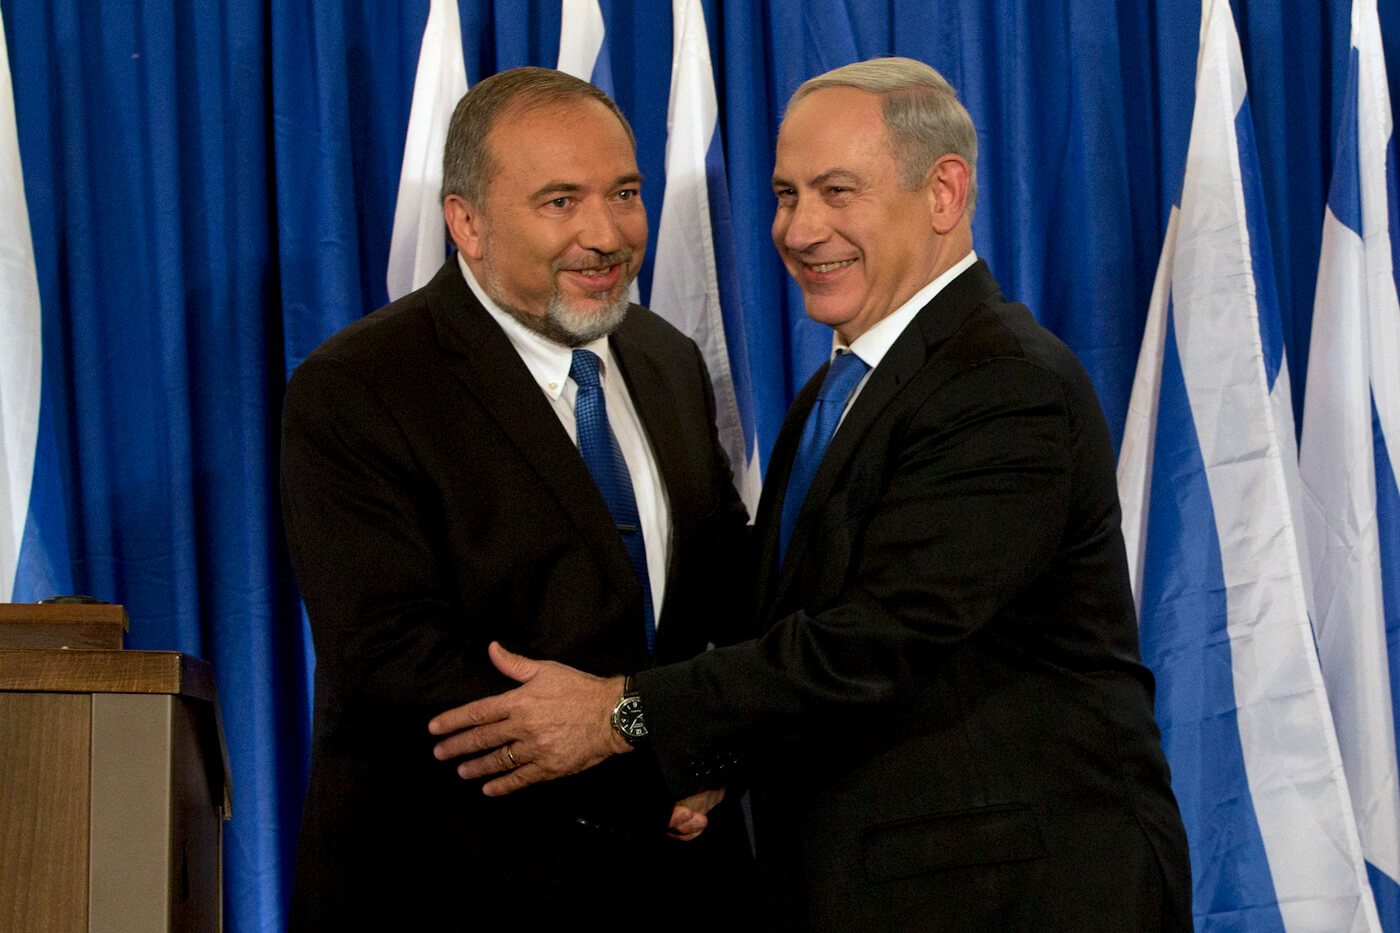 Benjamin Netanyahu, Avigdor Lieberman